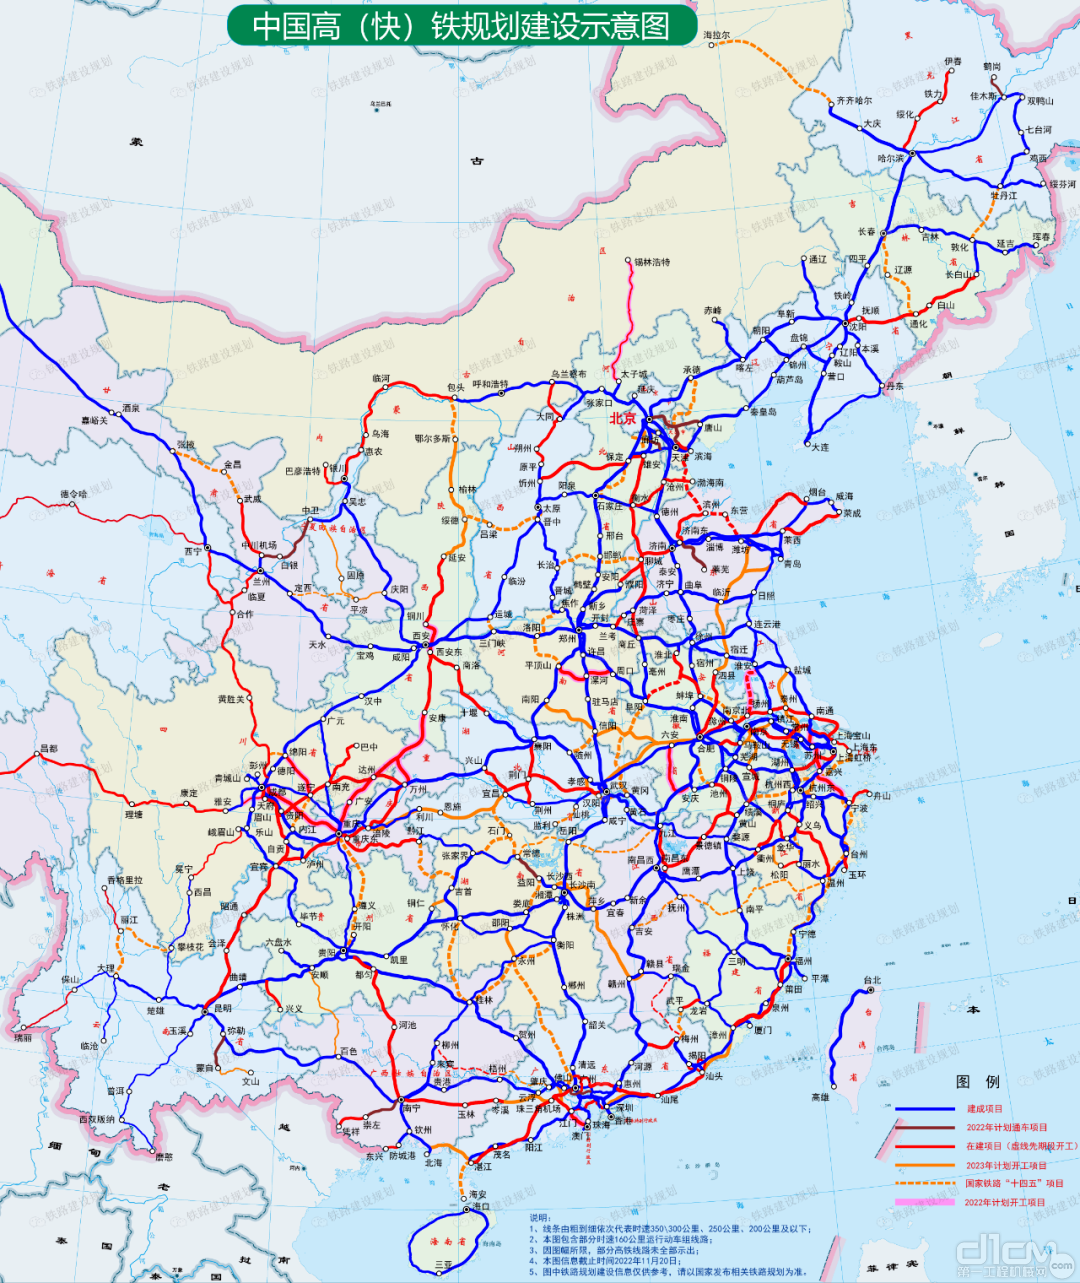 中国高铁建设规划示意图